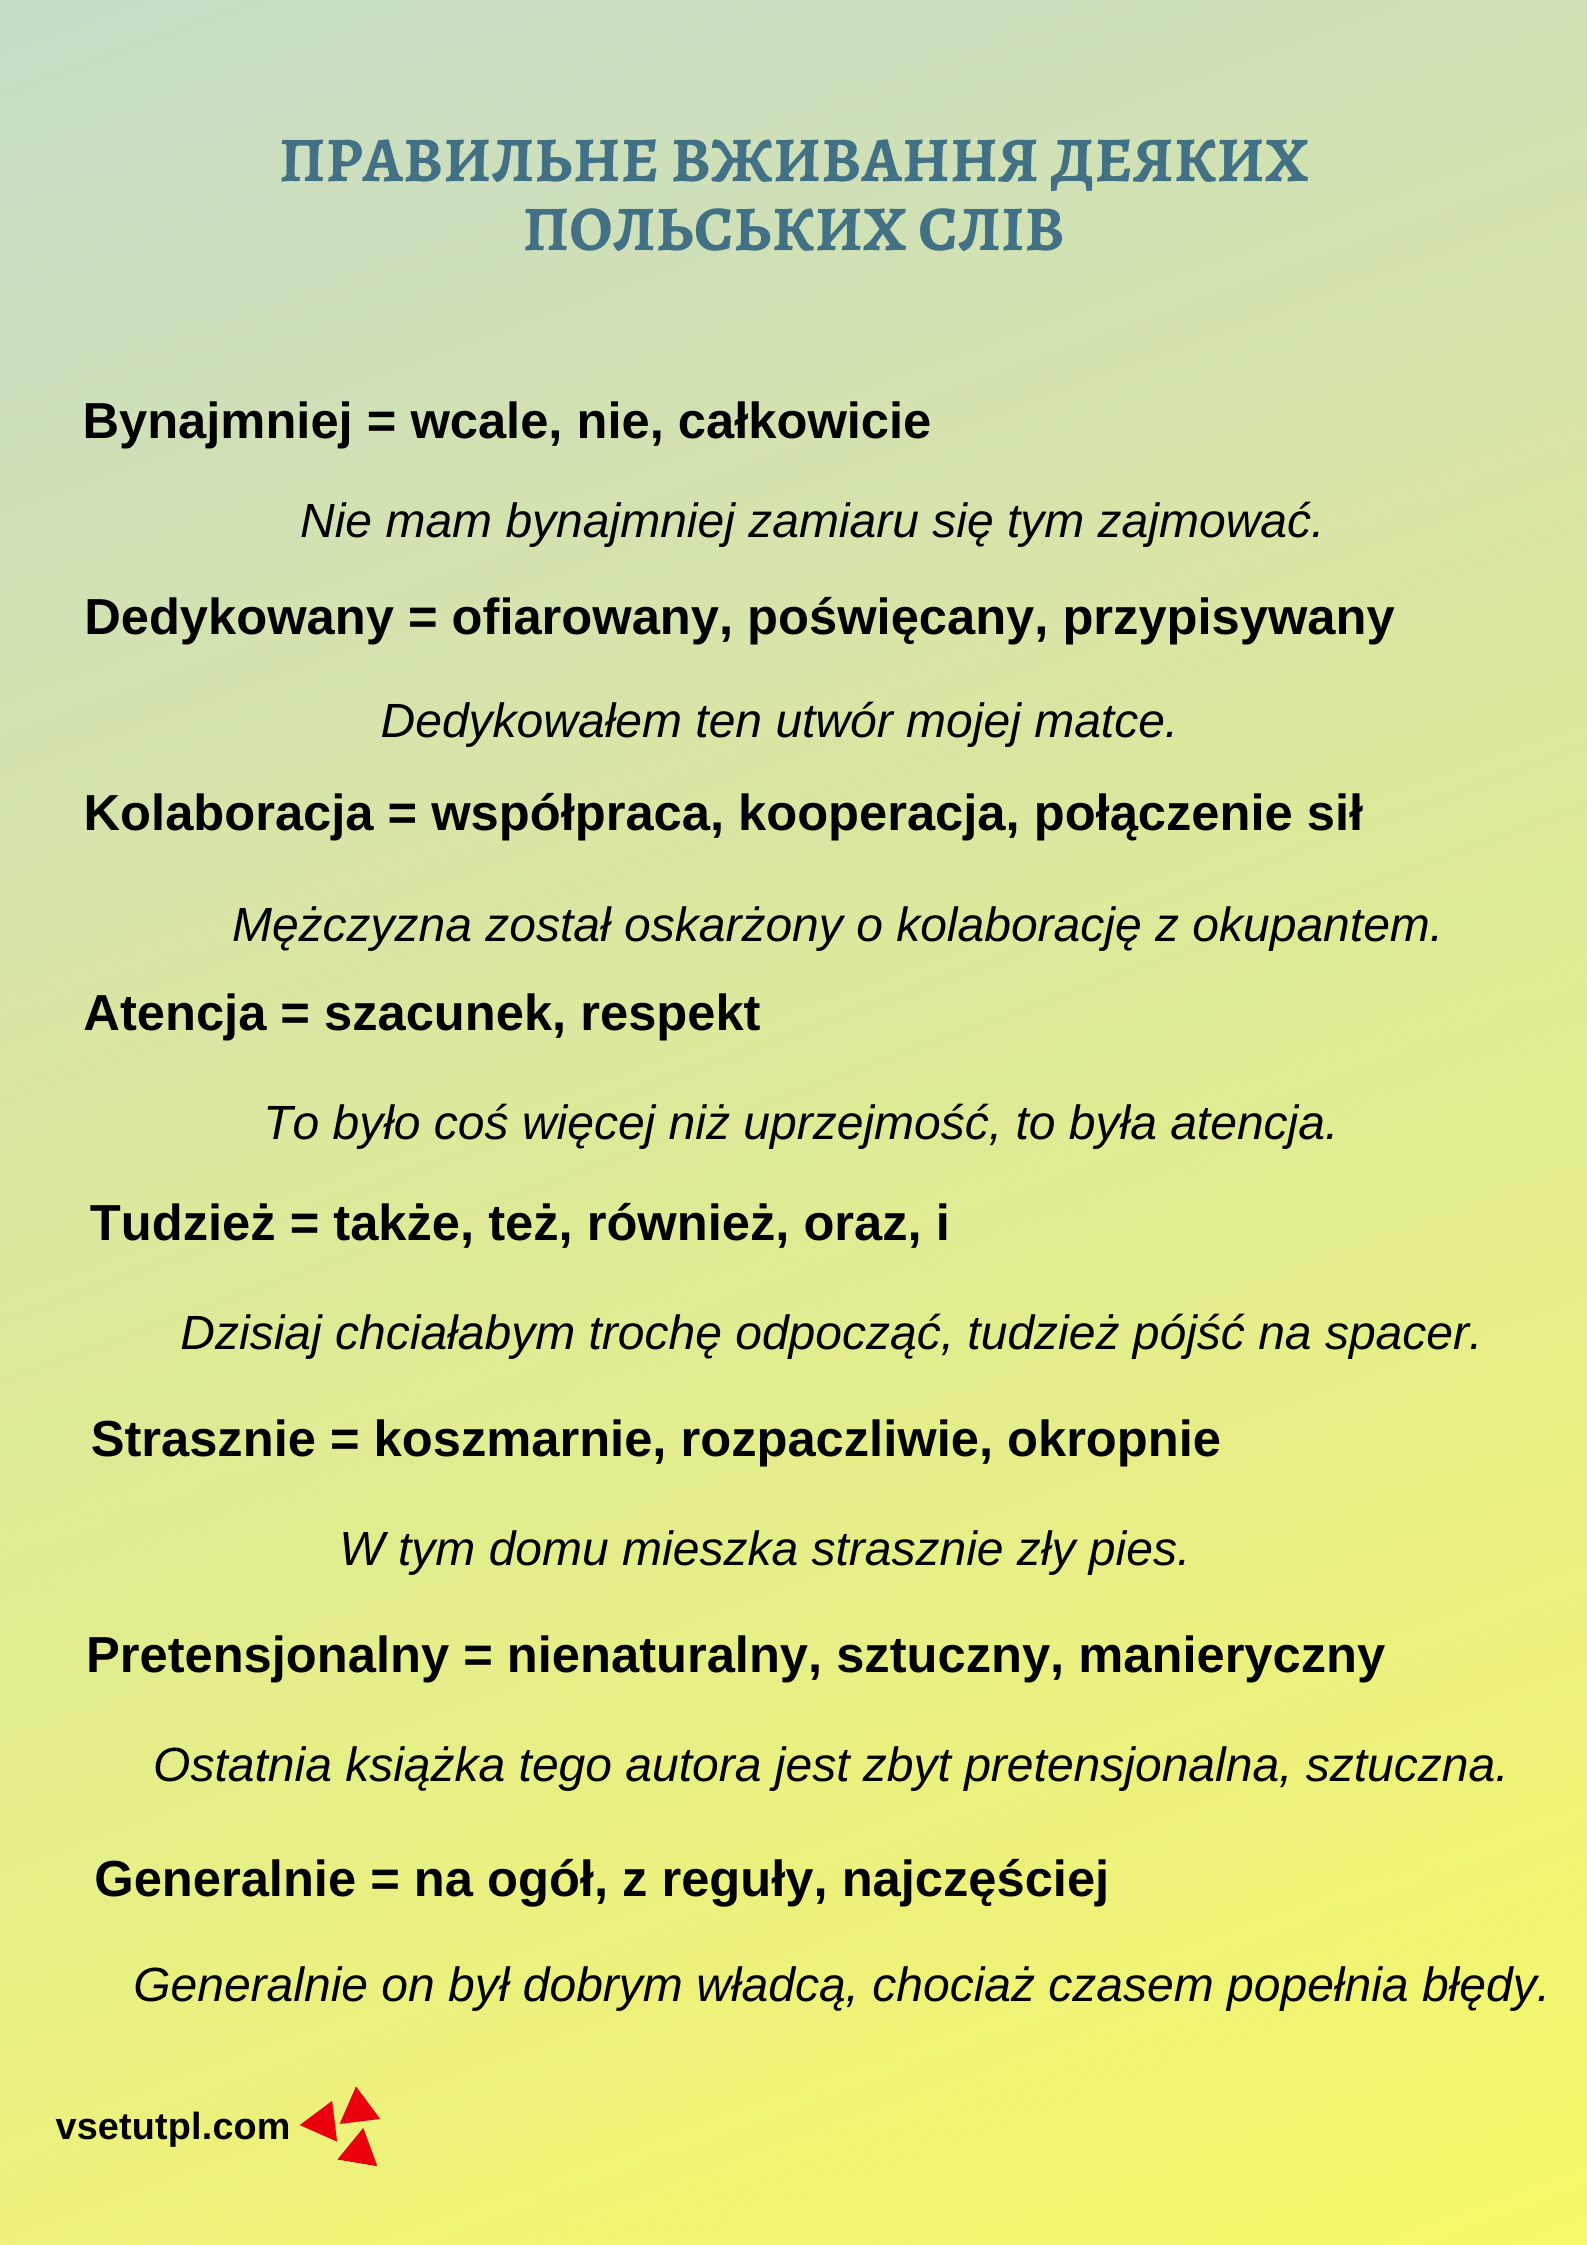 польська мова лексика